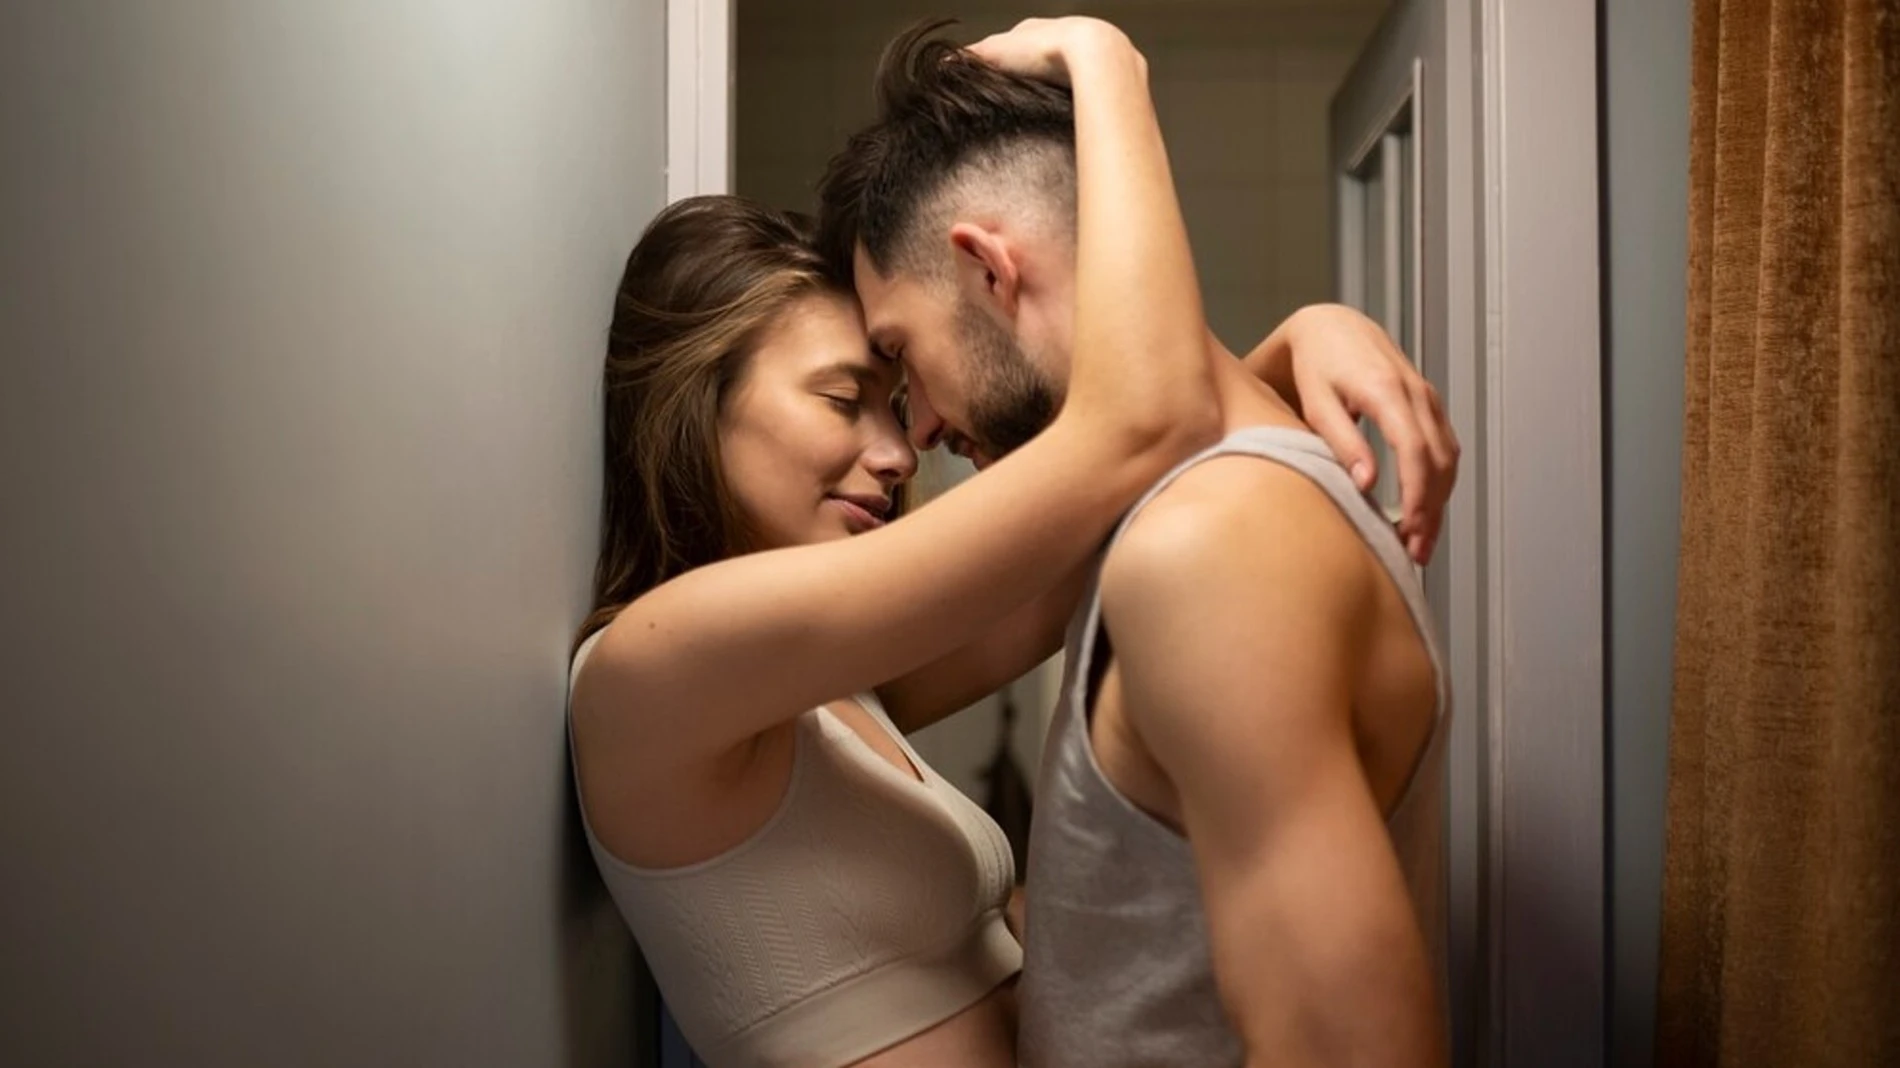 7 базовых вещей в сексе, о которых мечтает каждый мужчина – Люкс ФМ